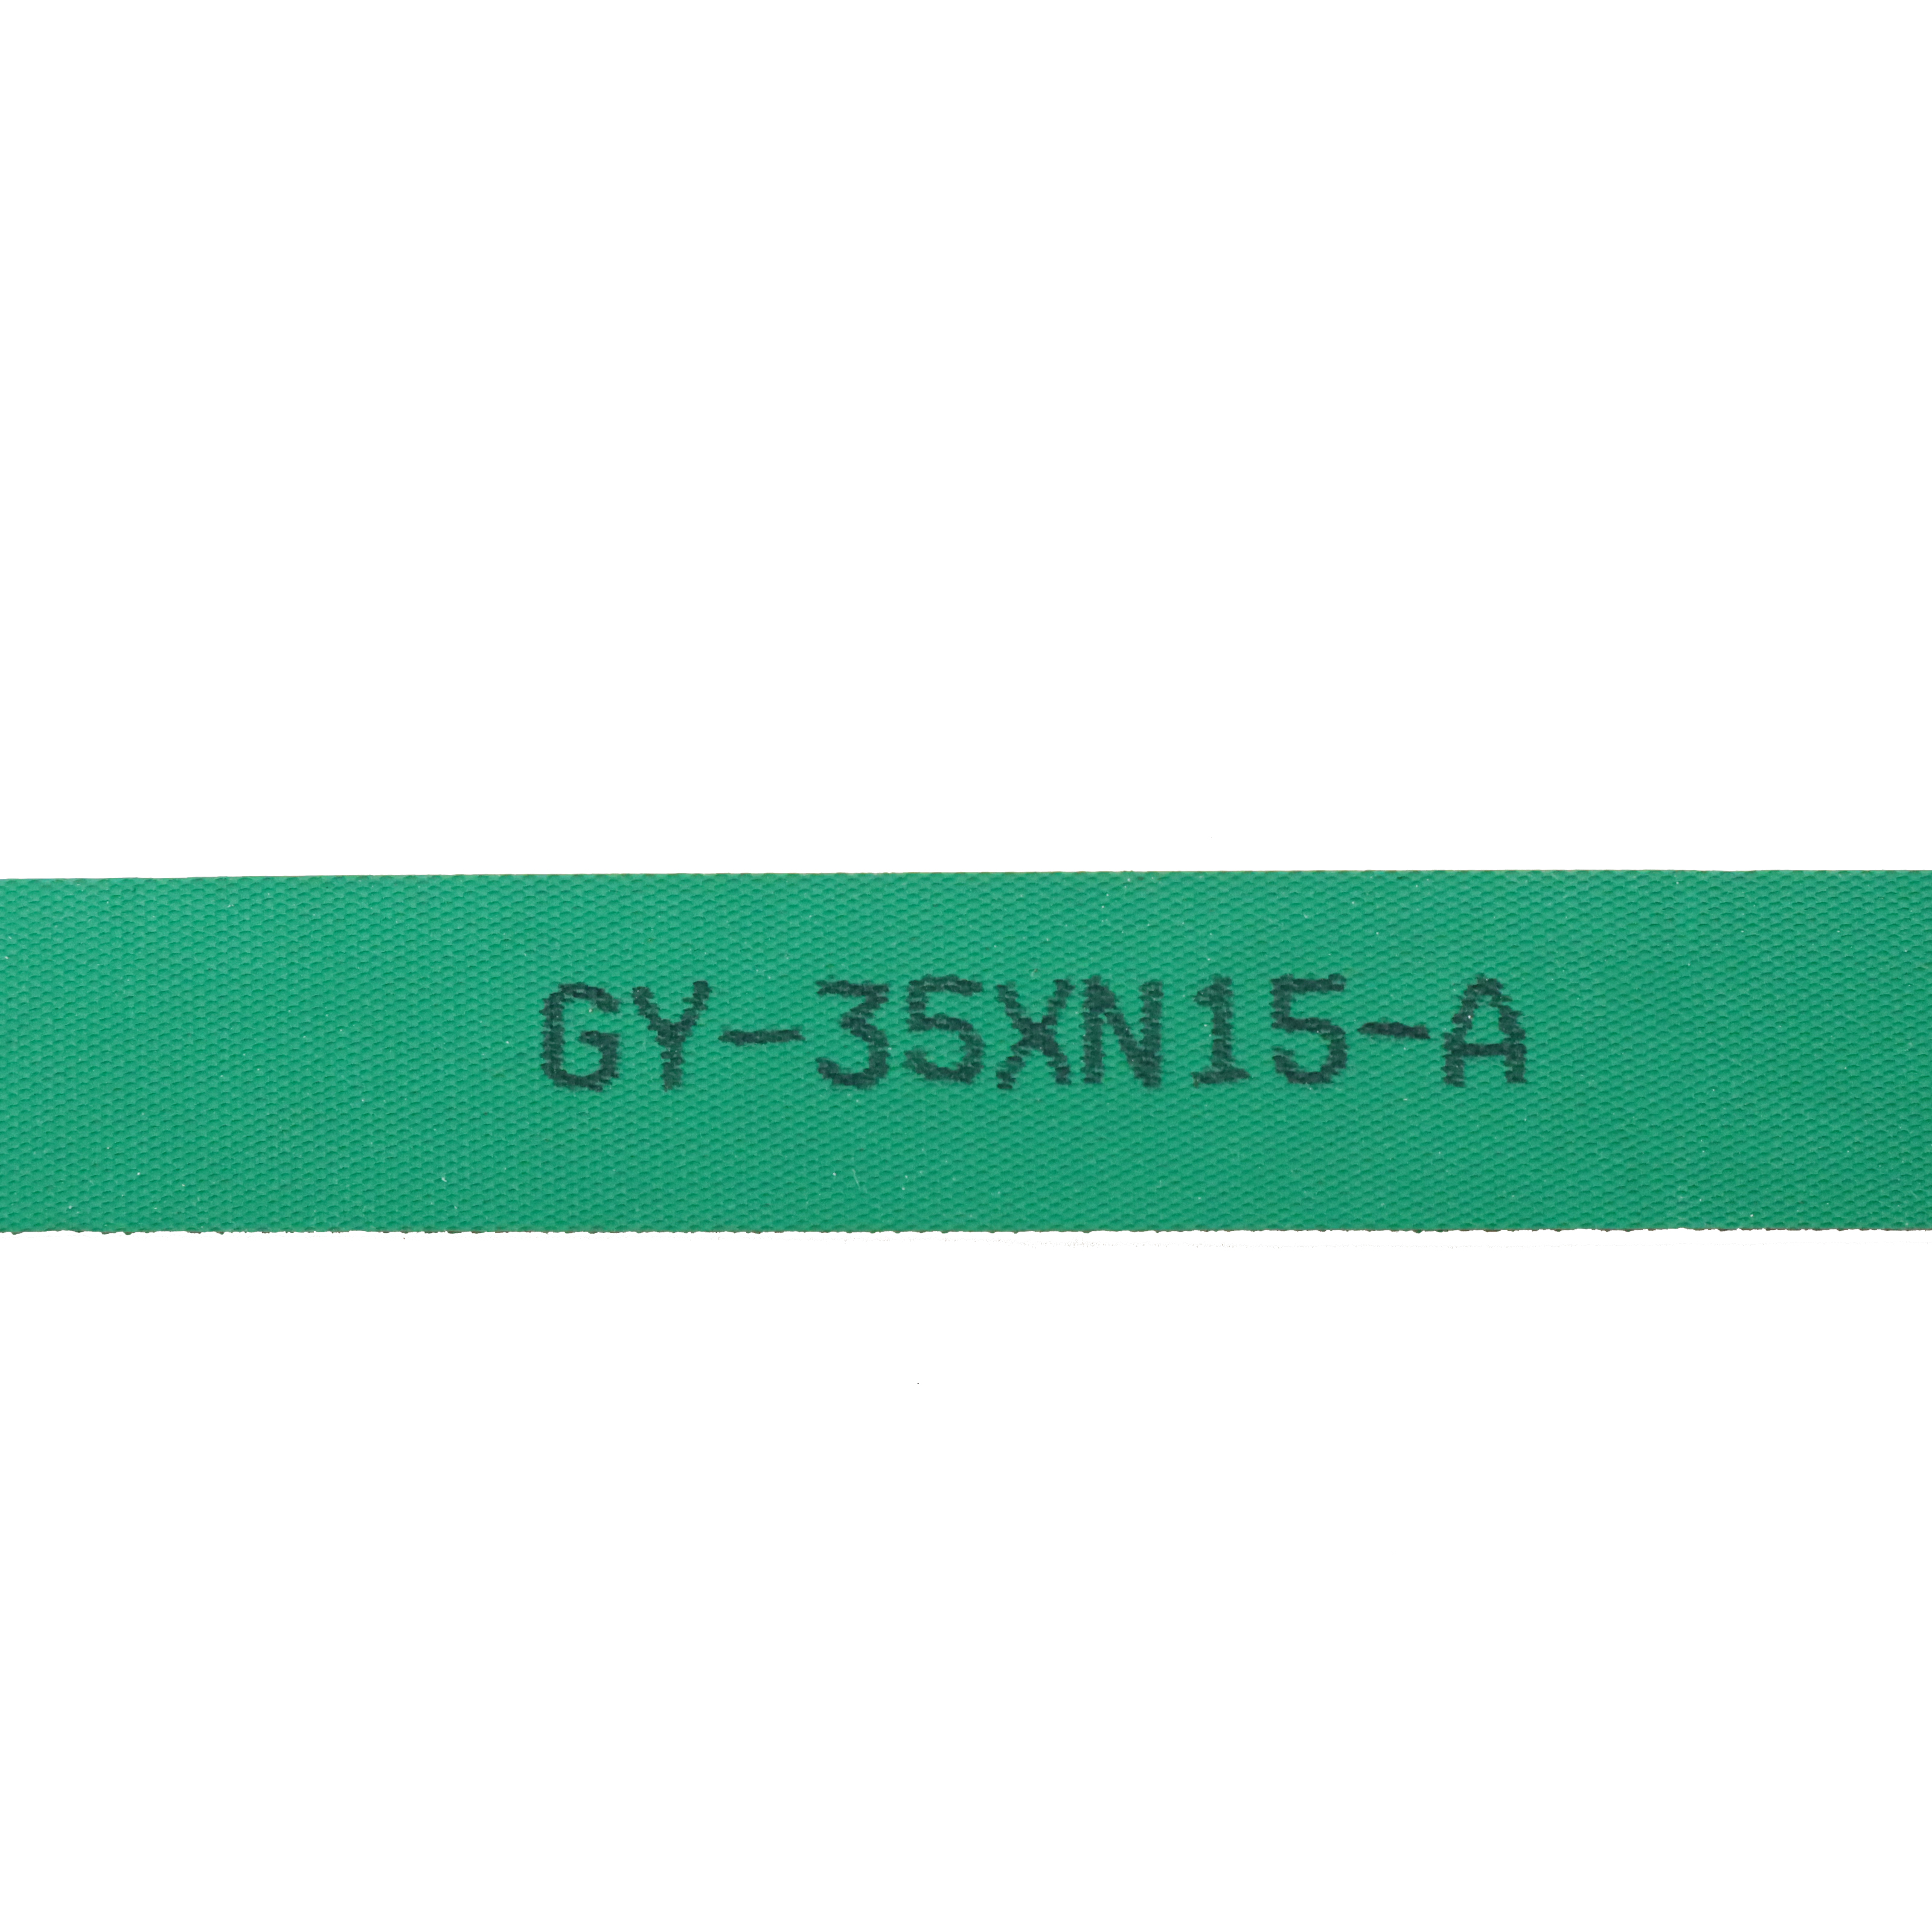 GY-35XN15-A